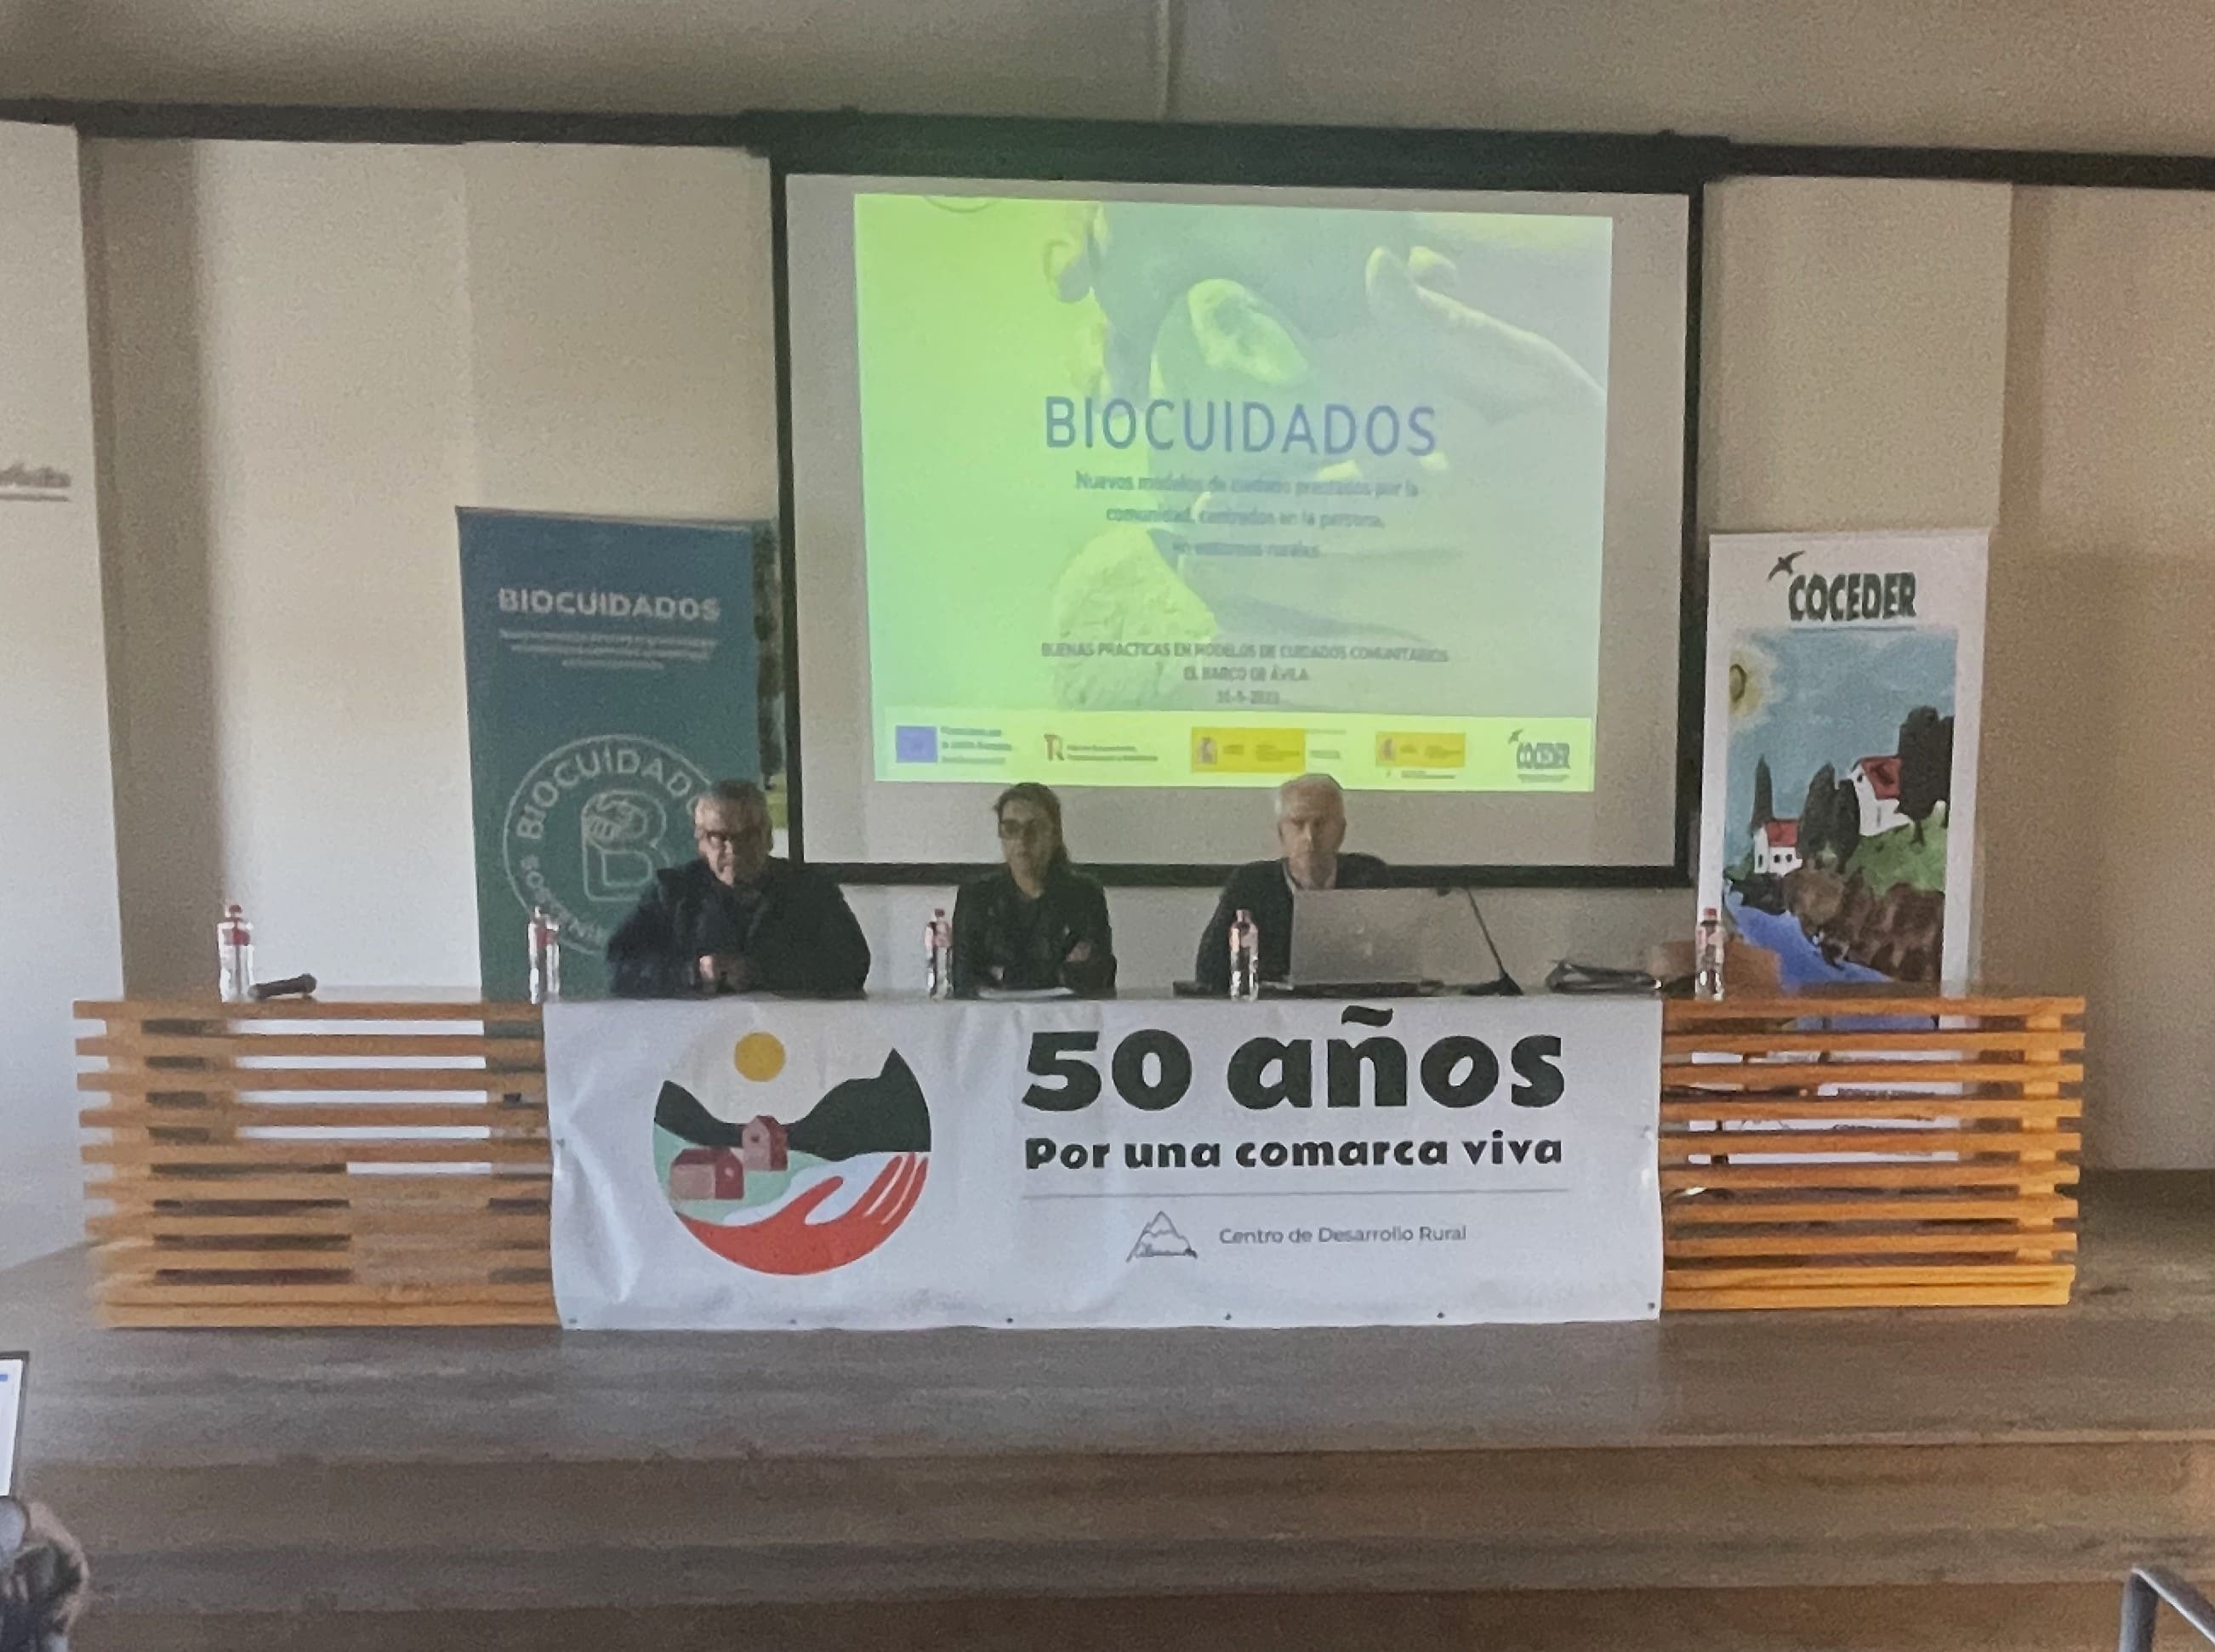 La presidenta de Coceder, el director del CDR de Almazor y un representante del ayuntamiento explican la jornada con una imagen poryectada en el fondo de  Buenas Prácticas de Biocuidados